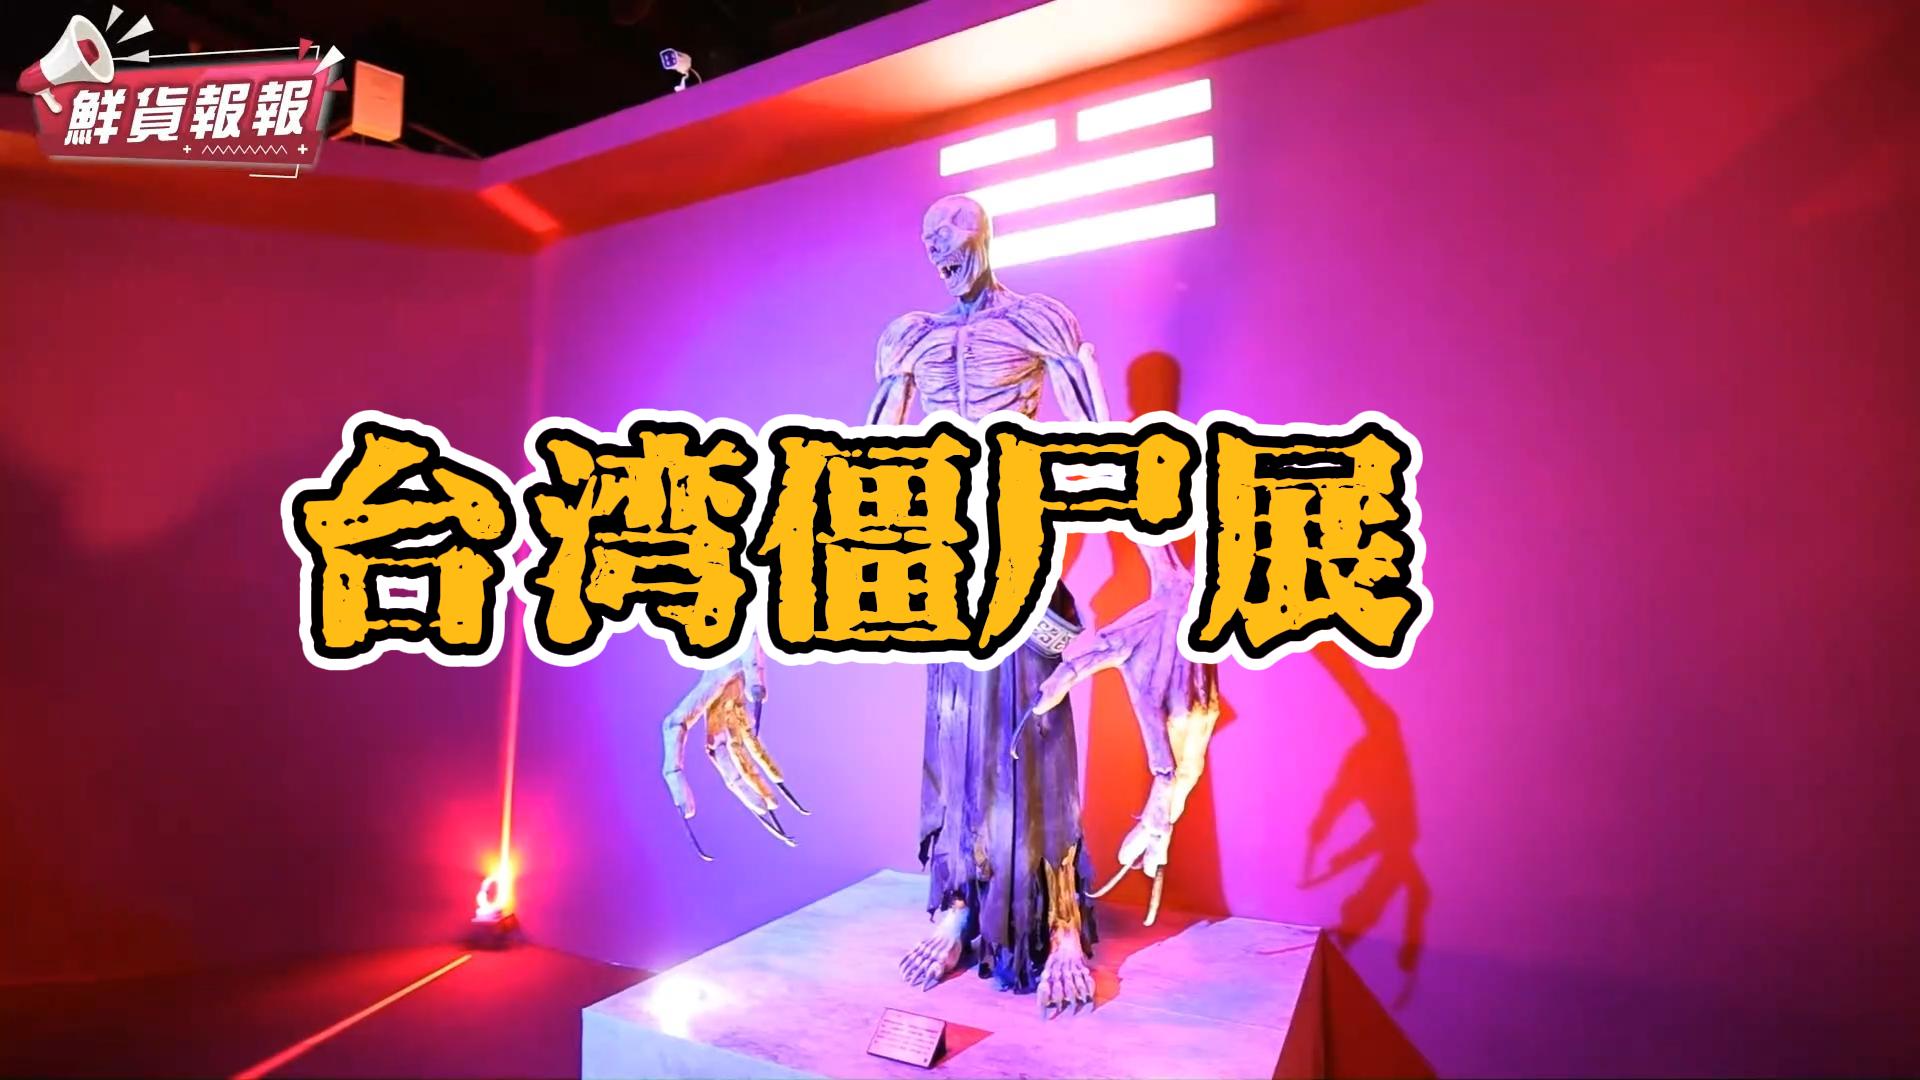 台湾僵尸模型展览